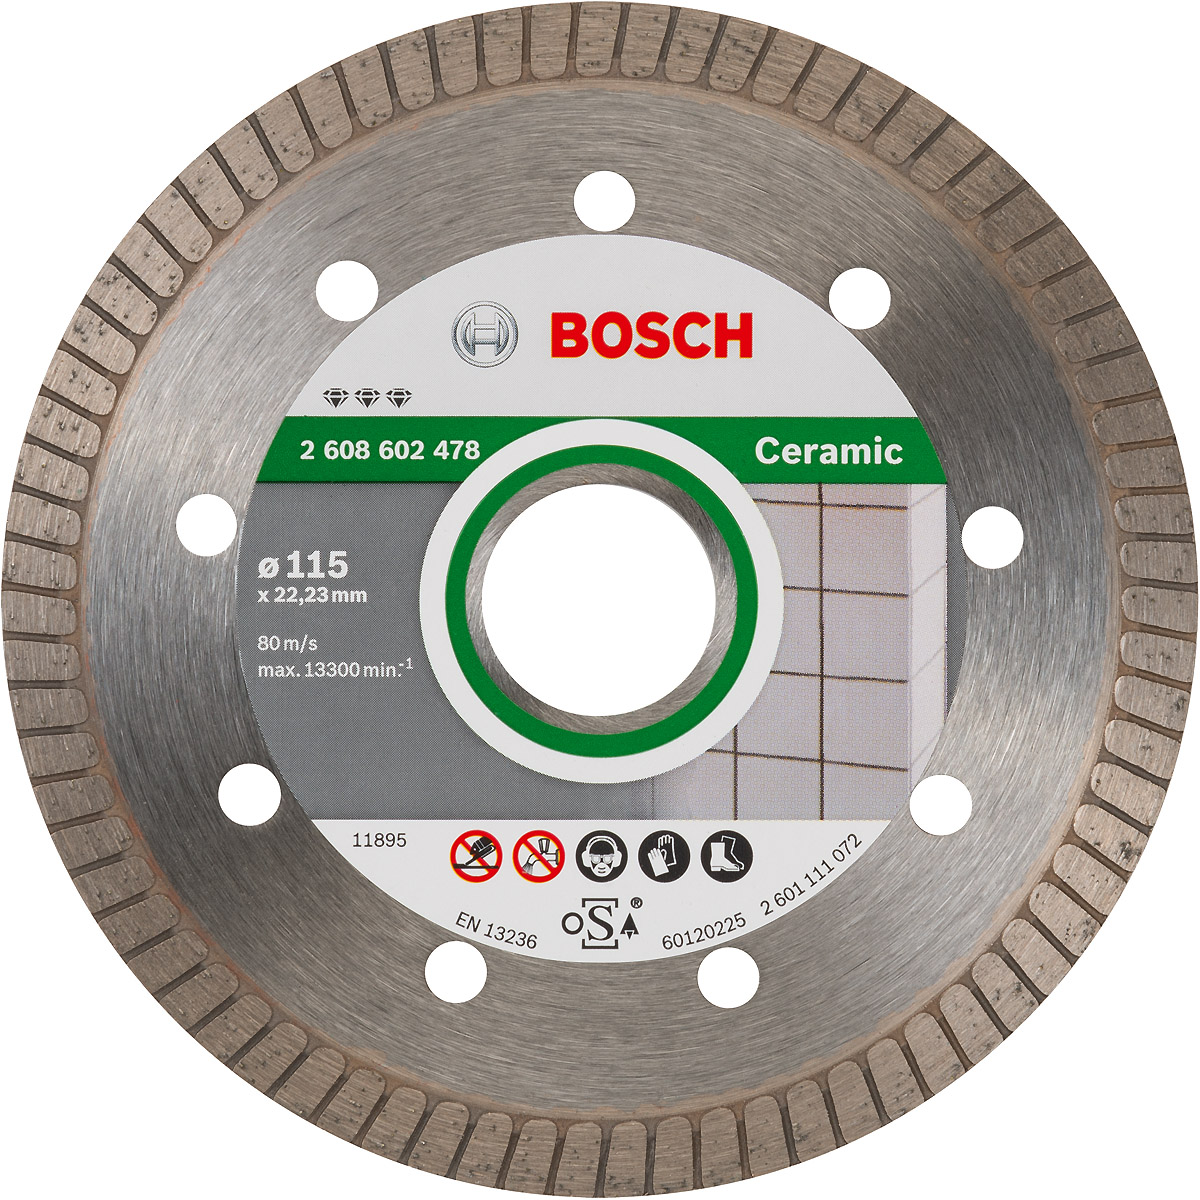 | | Bosch Turbo, Segmen Trenn-, Diamanttrennscheibe for Bohrungsdurchmesser Maschinen (mm):22.23, Extra-Clean | Werkzeuge Schleif- | | für und Ceramic Verbrauchsartikel Best Polierscheiben Diamanttrennscheiben tuulzone